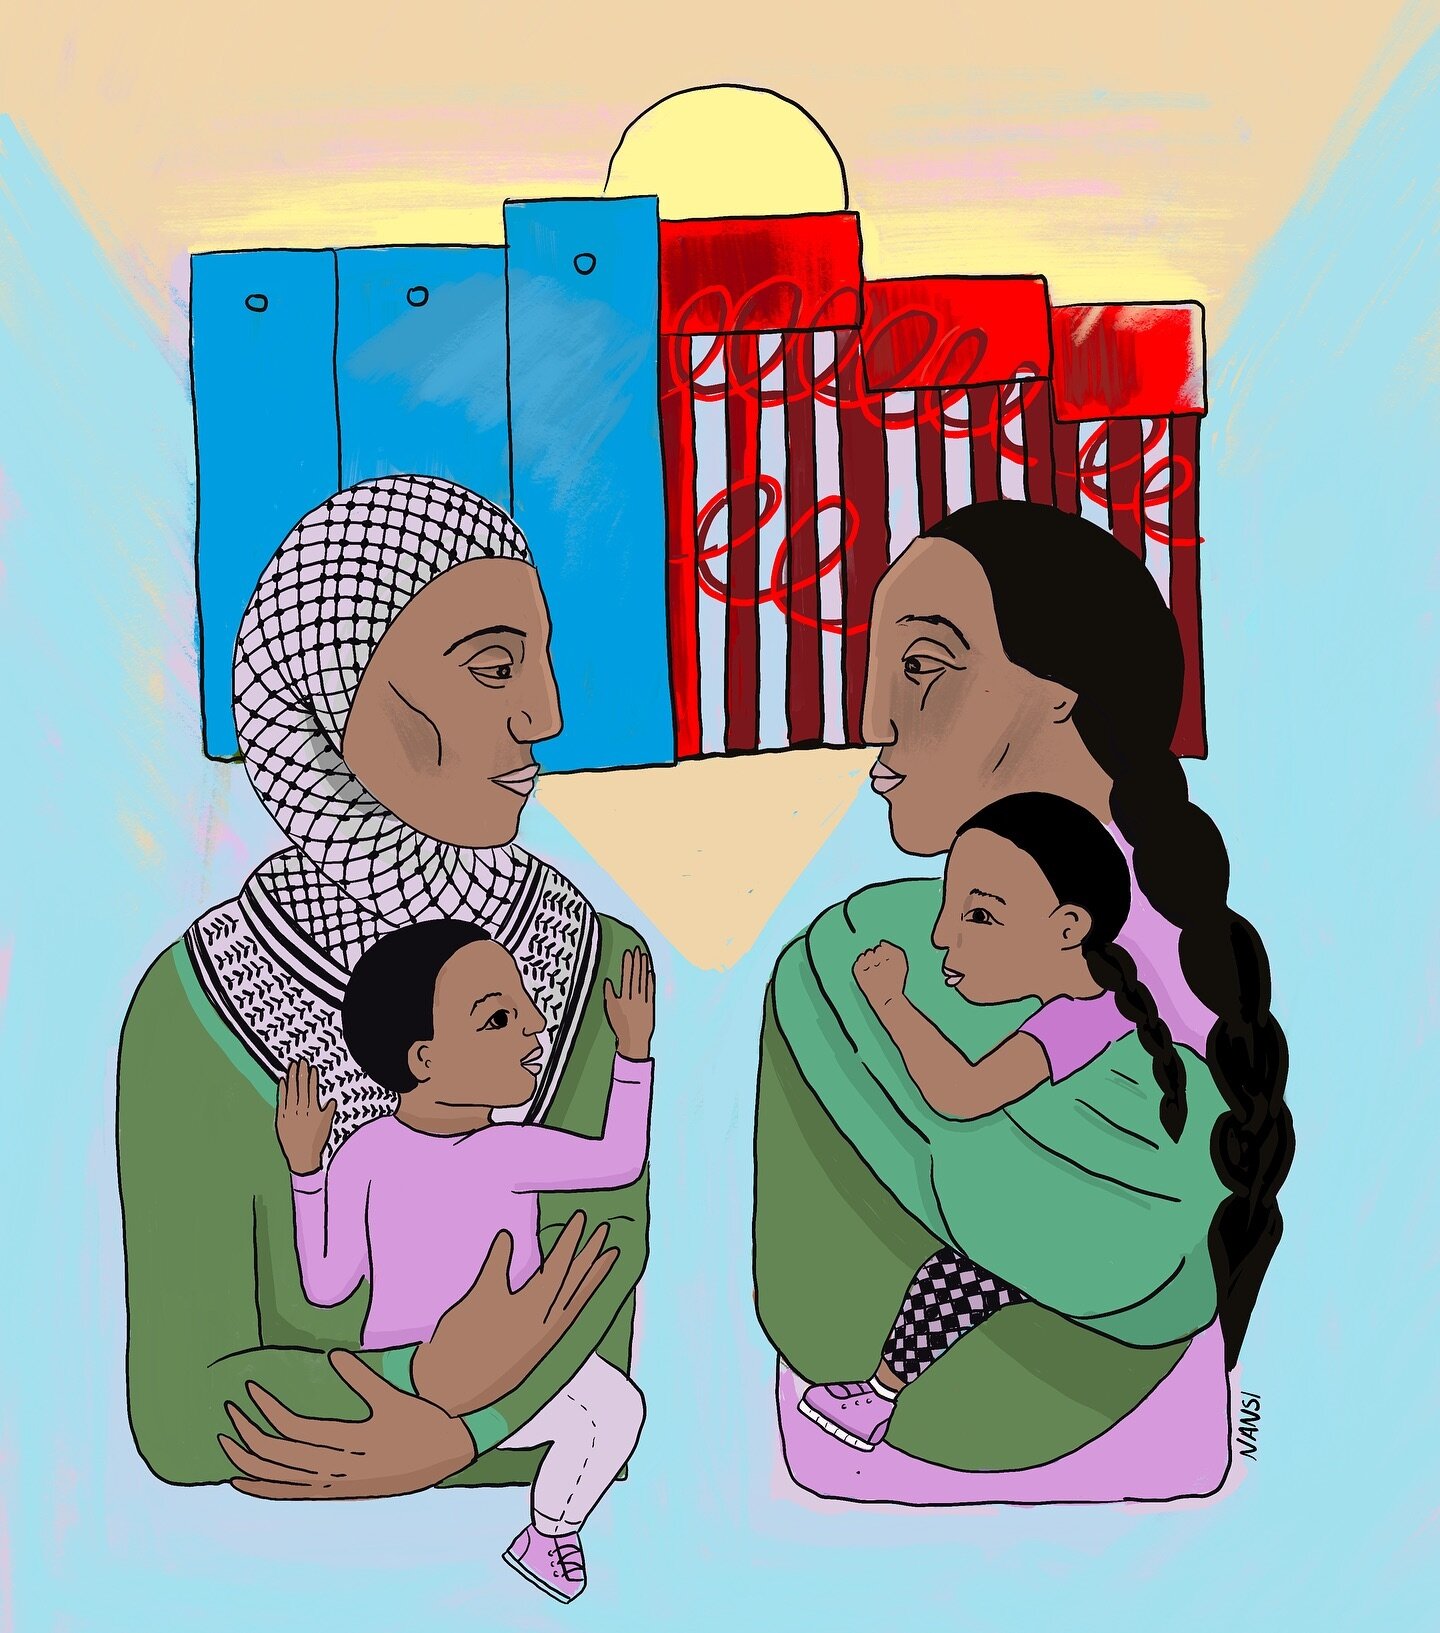 Desde la frontera a Palestina, seremos libres Artwork: Nansi Guevara